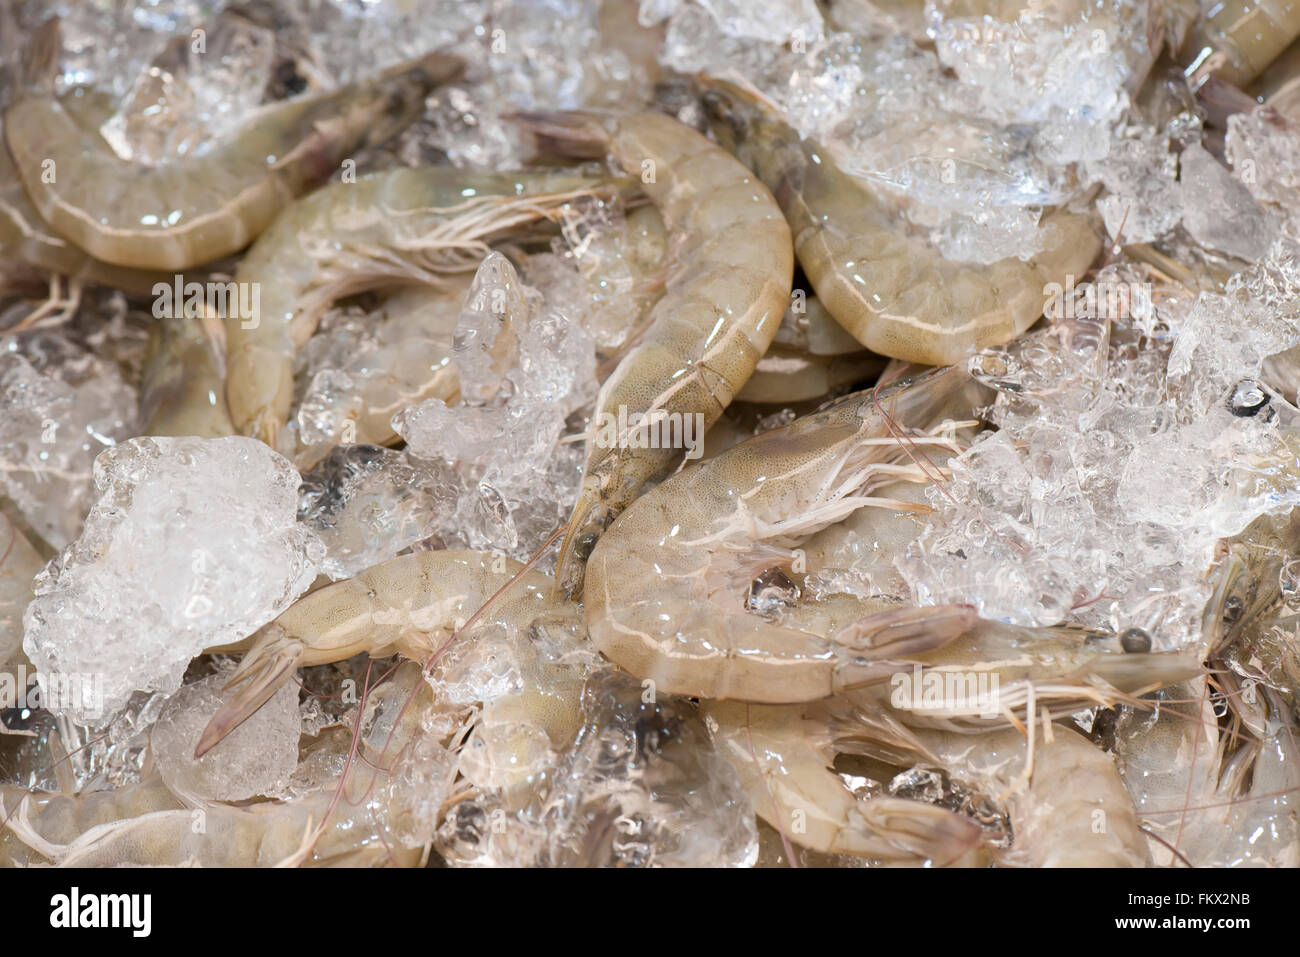 Crevettes fraîches réfrigérées dans les glaces. Banque D'Images